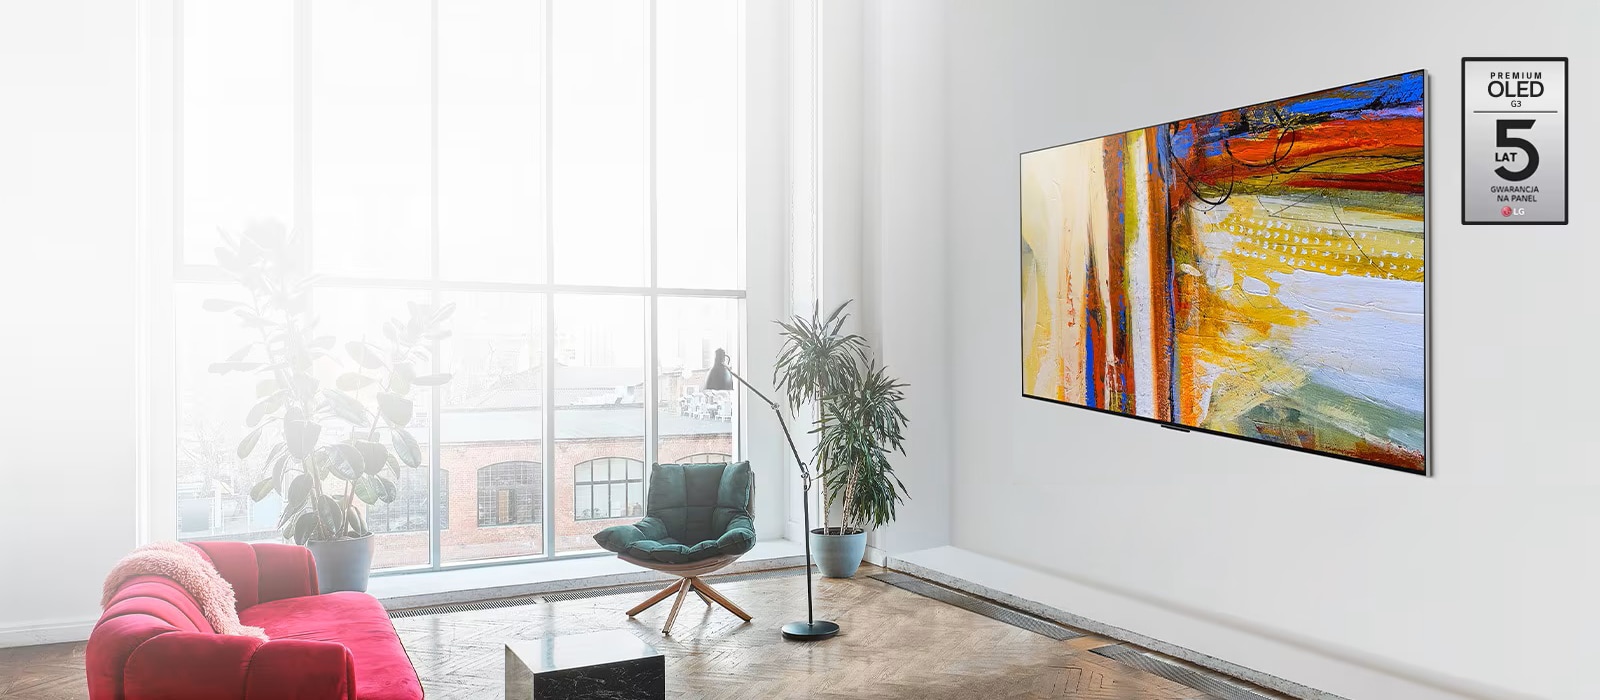 Zdjęcie telewizora LG OLED G3 przedstawiającego kolorowe abstrakcyjne dzieło sztuki w jasnym pokoju.